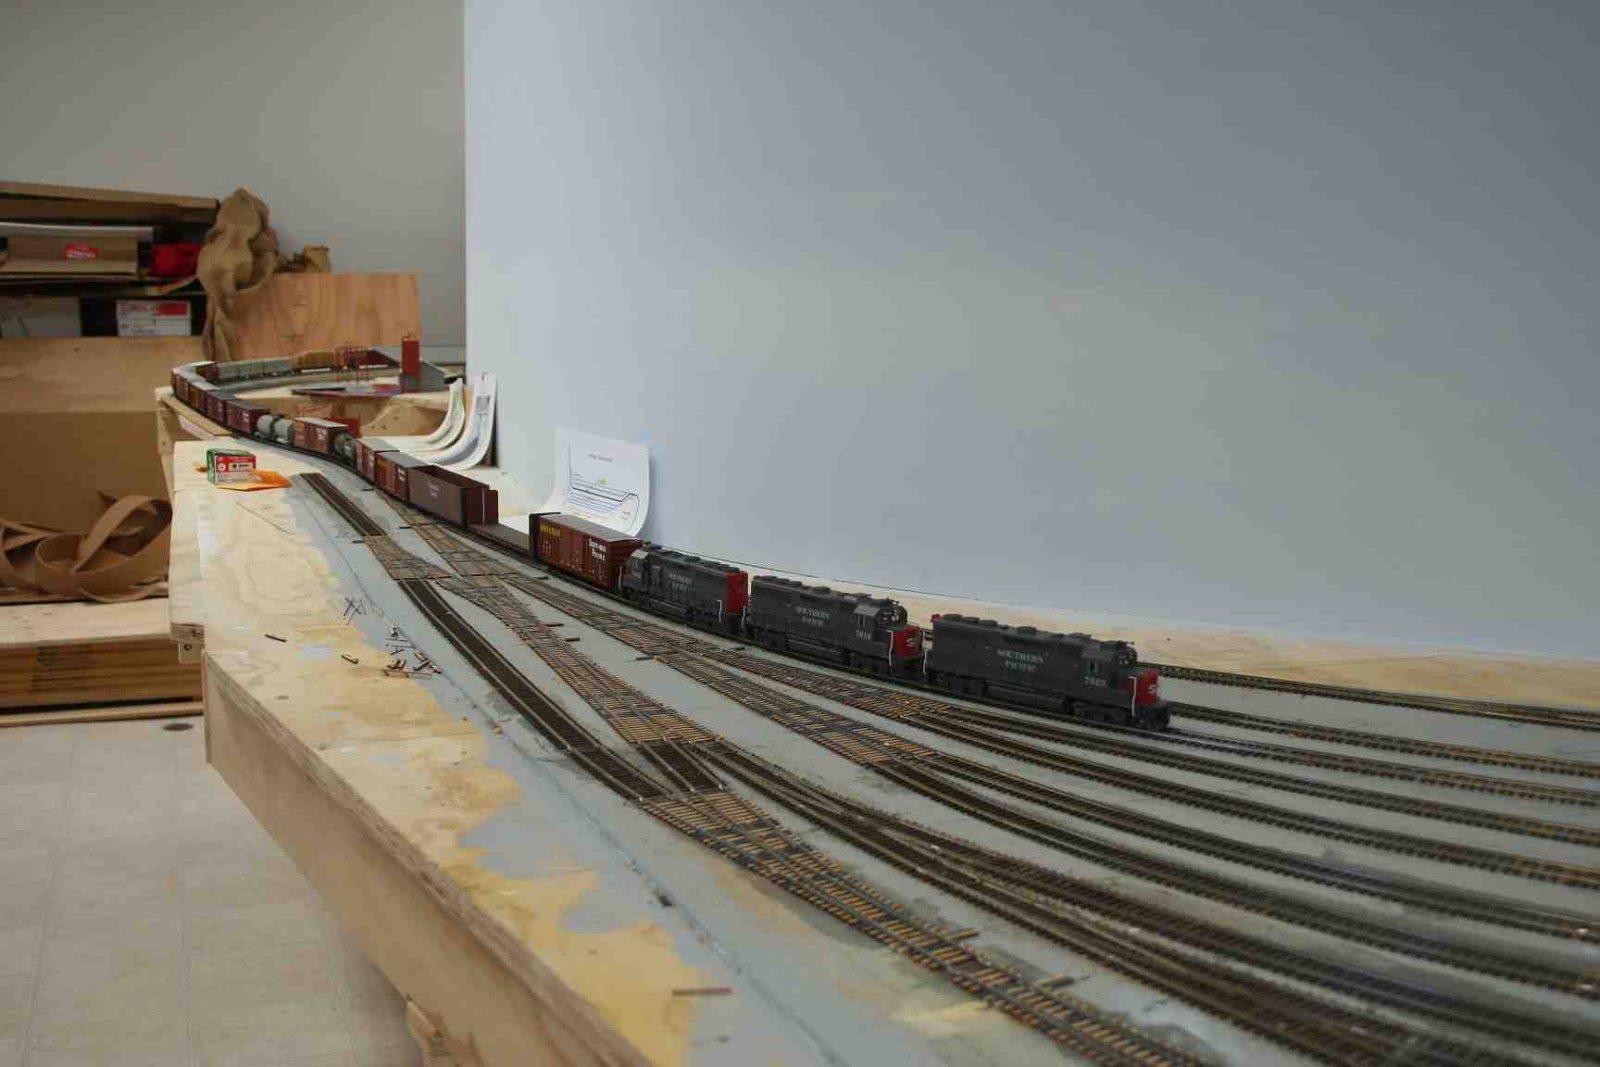 Testors Discontinues Popular Lines of Model Paint - Railroad Model Craftsman